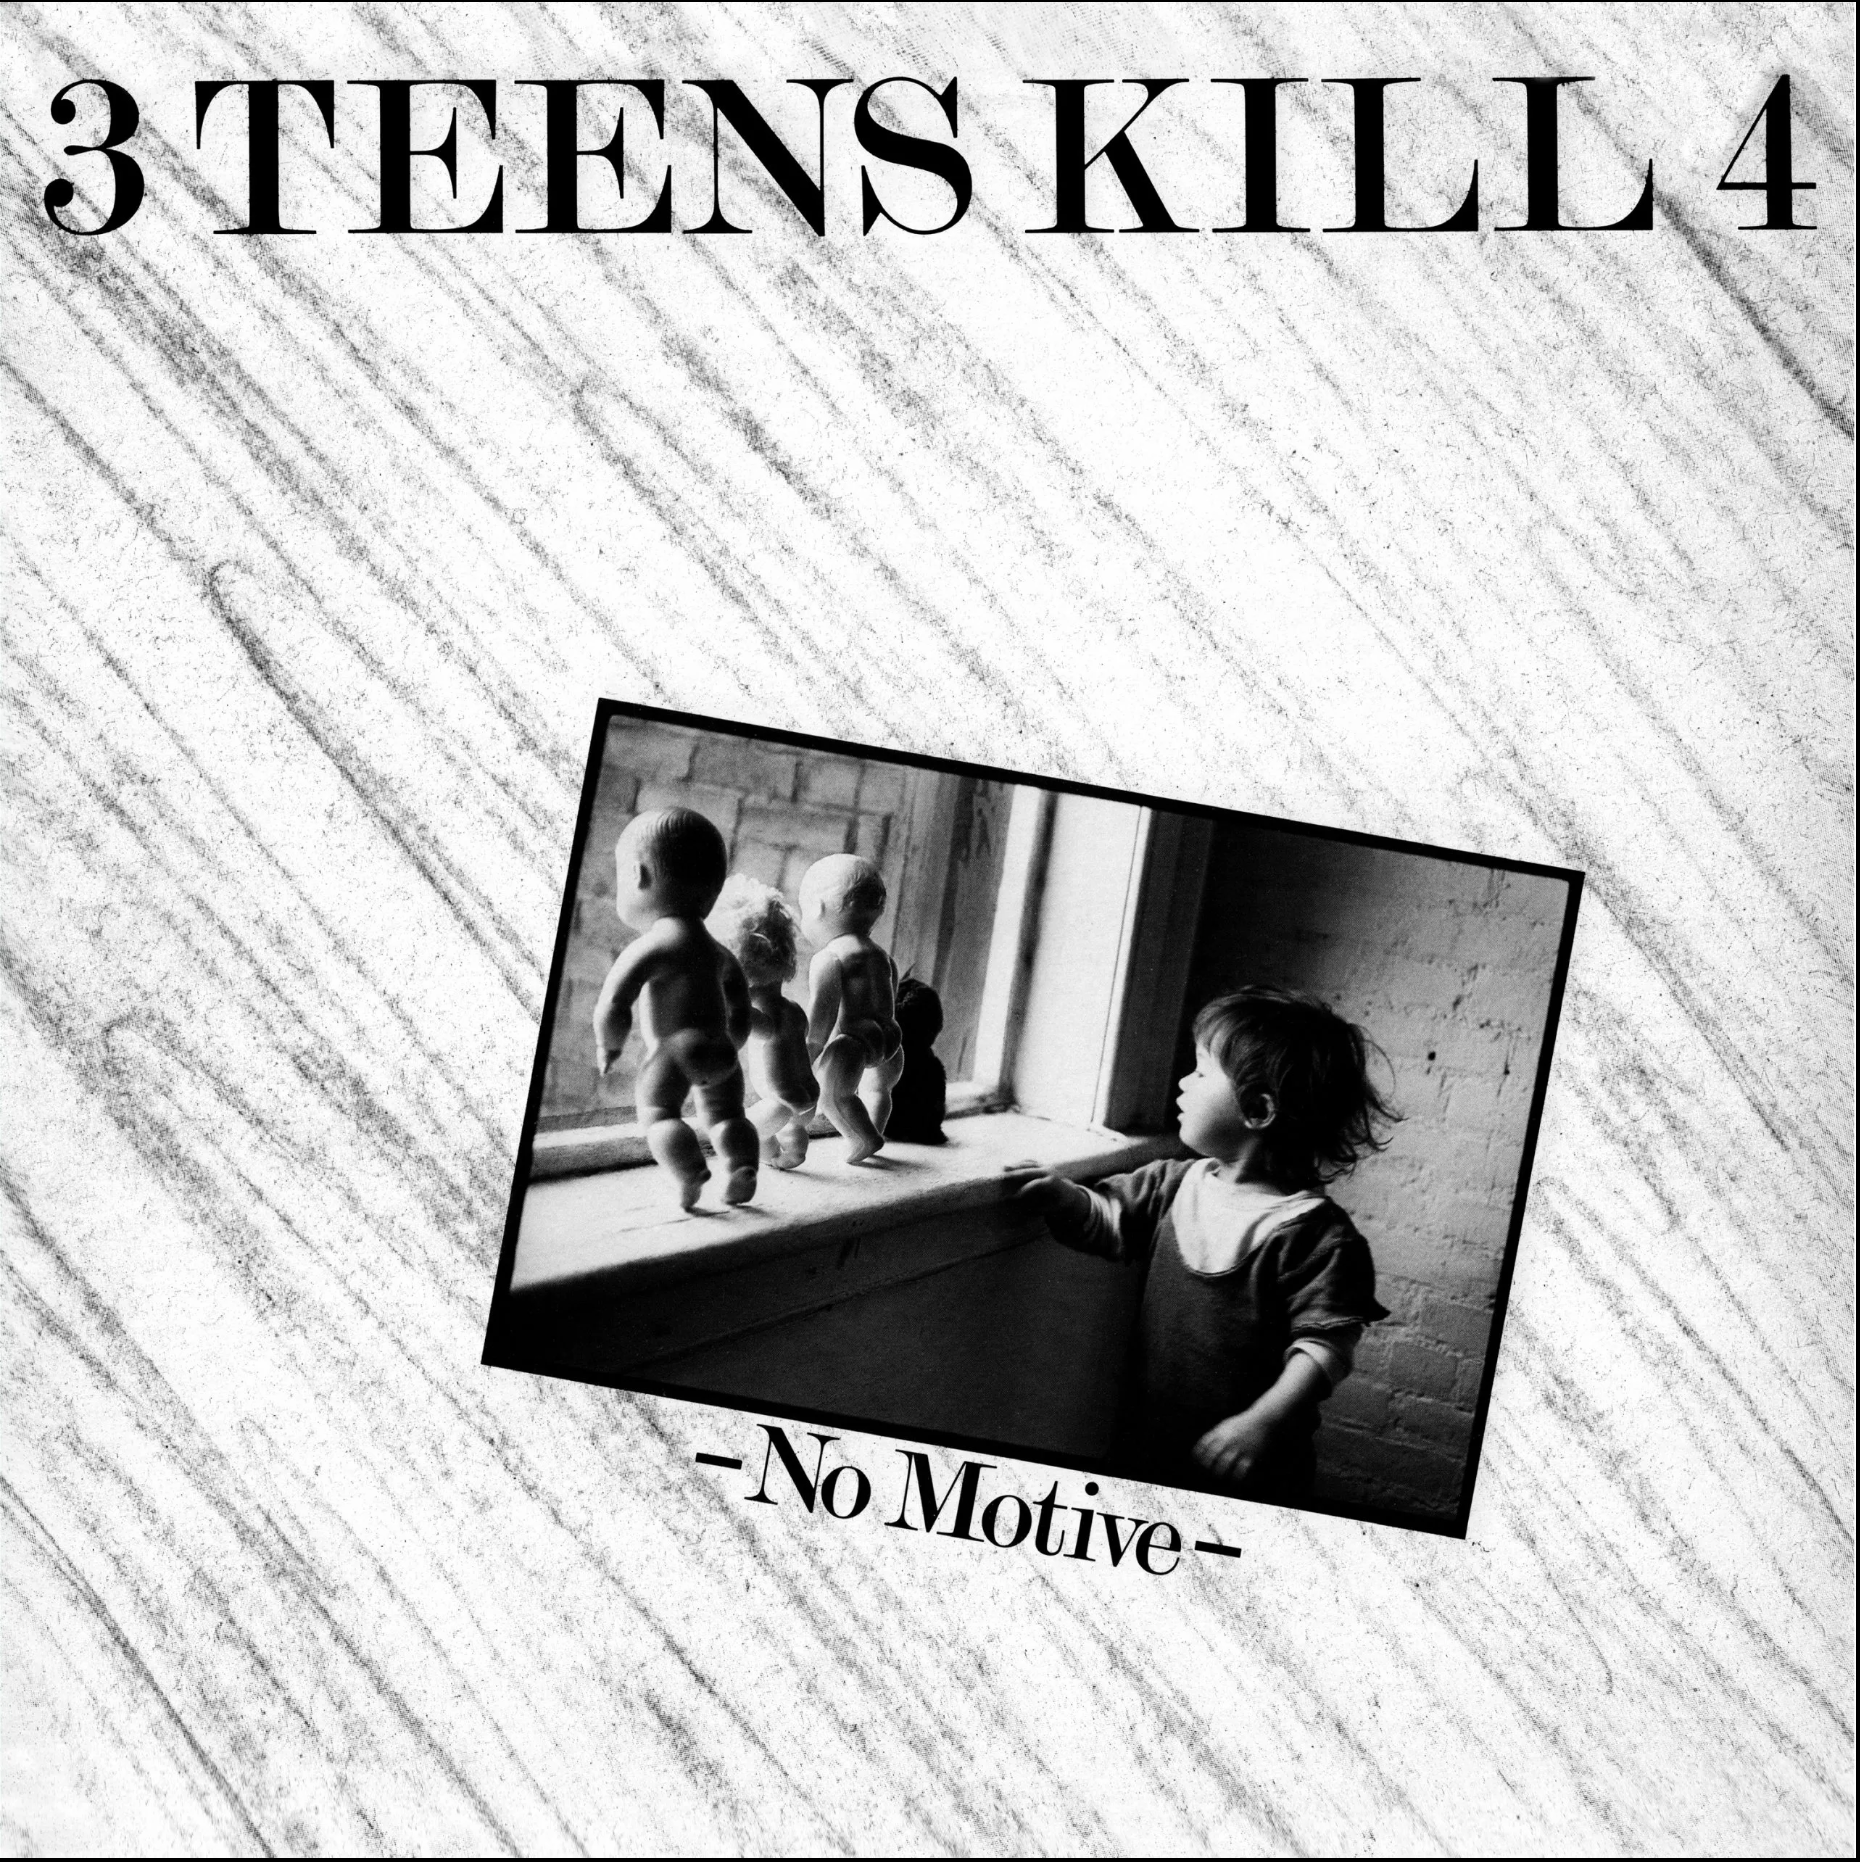 Cover of 3 Teens Kill 4 record album "No Motive" featuring photo by Seiji Kakizaki, 1982.